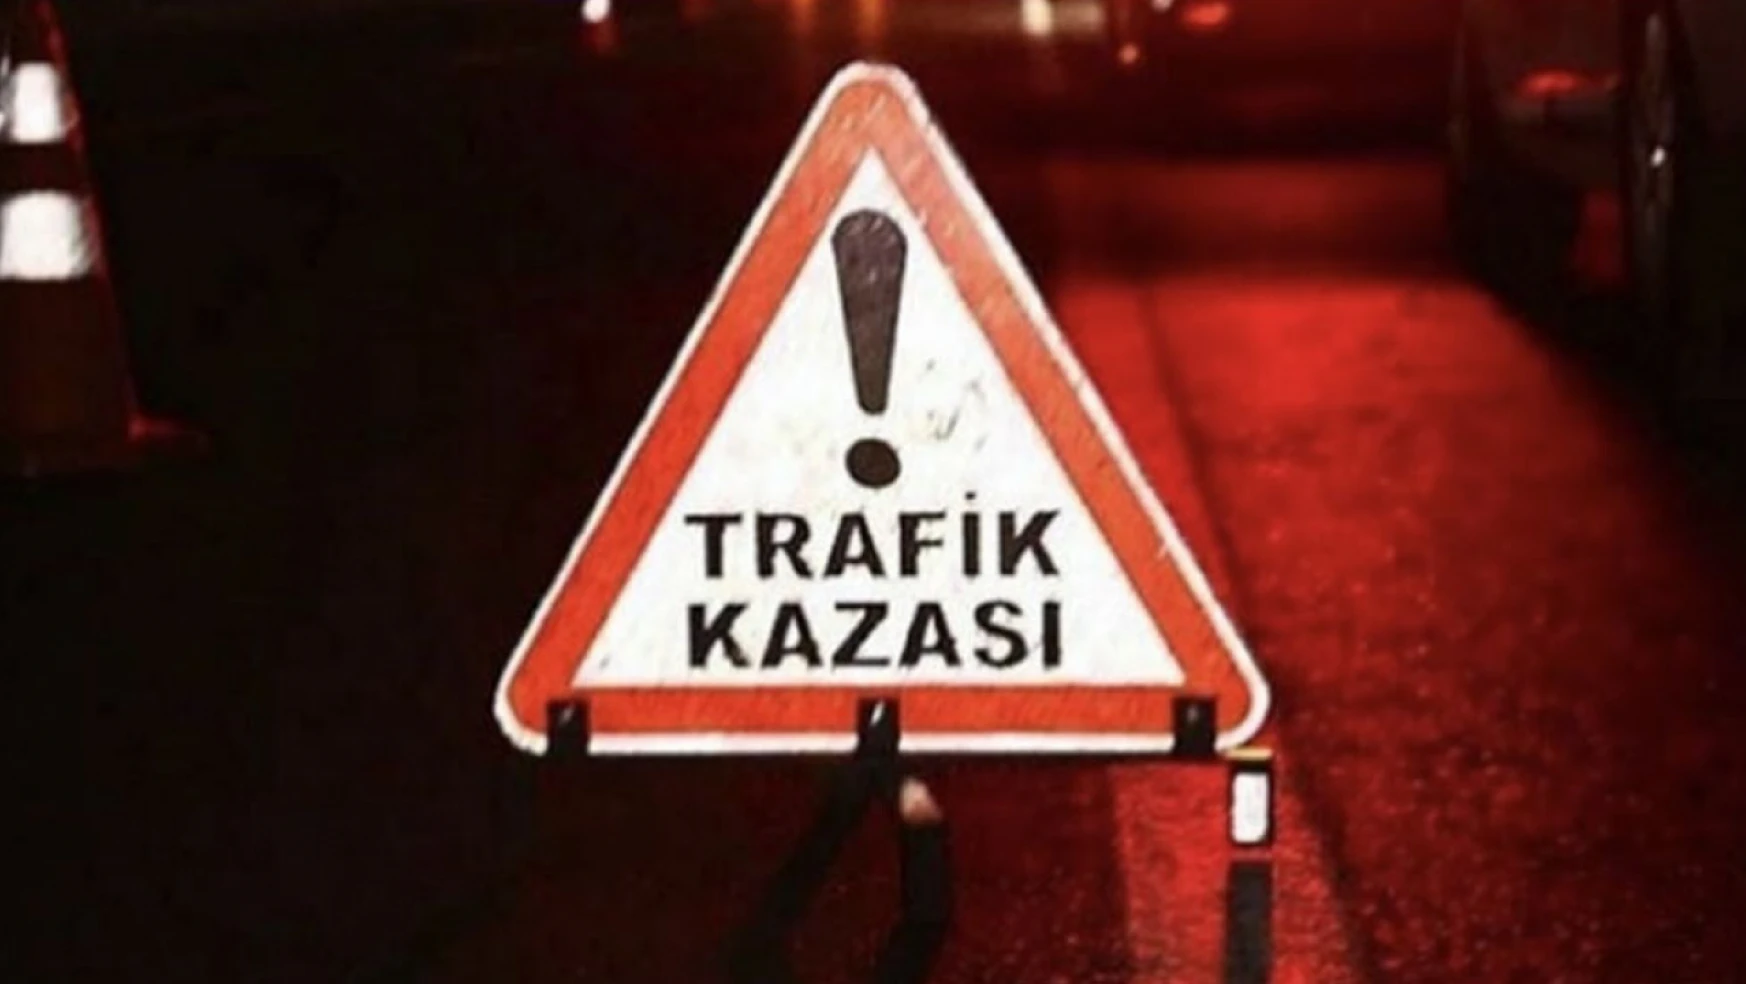 elazig-da-trafik-kazasi-1702592772-m5n4rx.webp